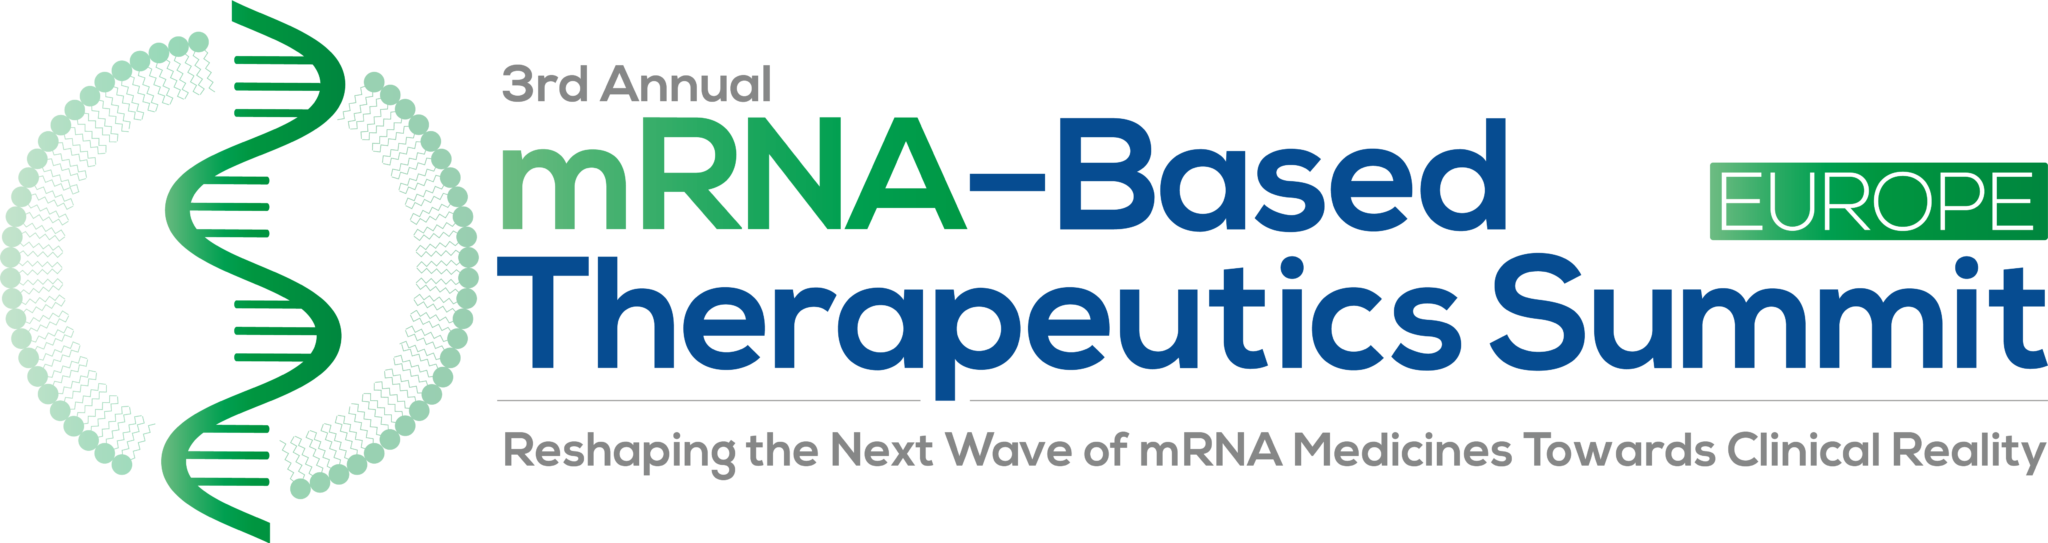 mRNA Assay Development Summit